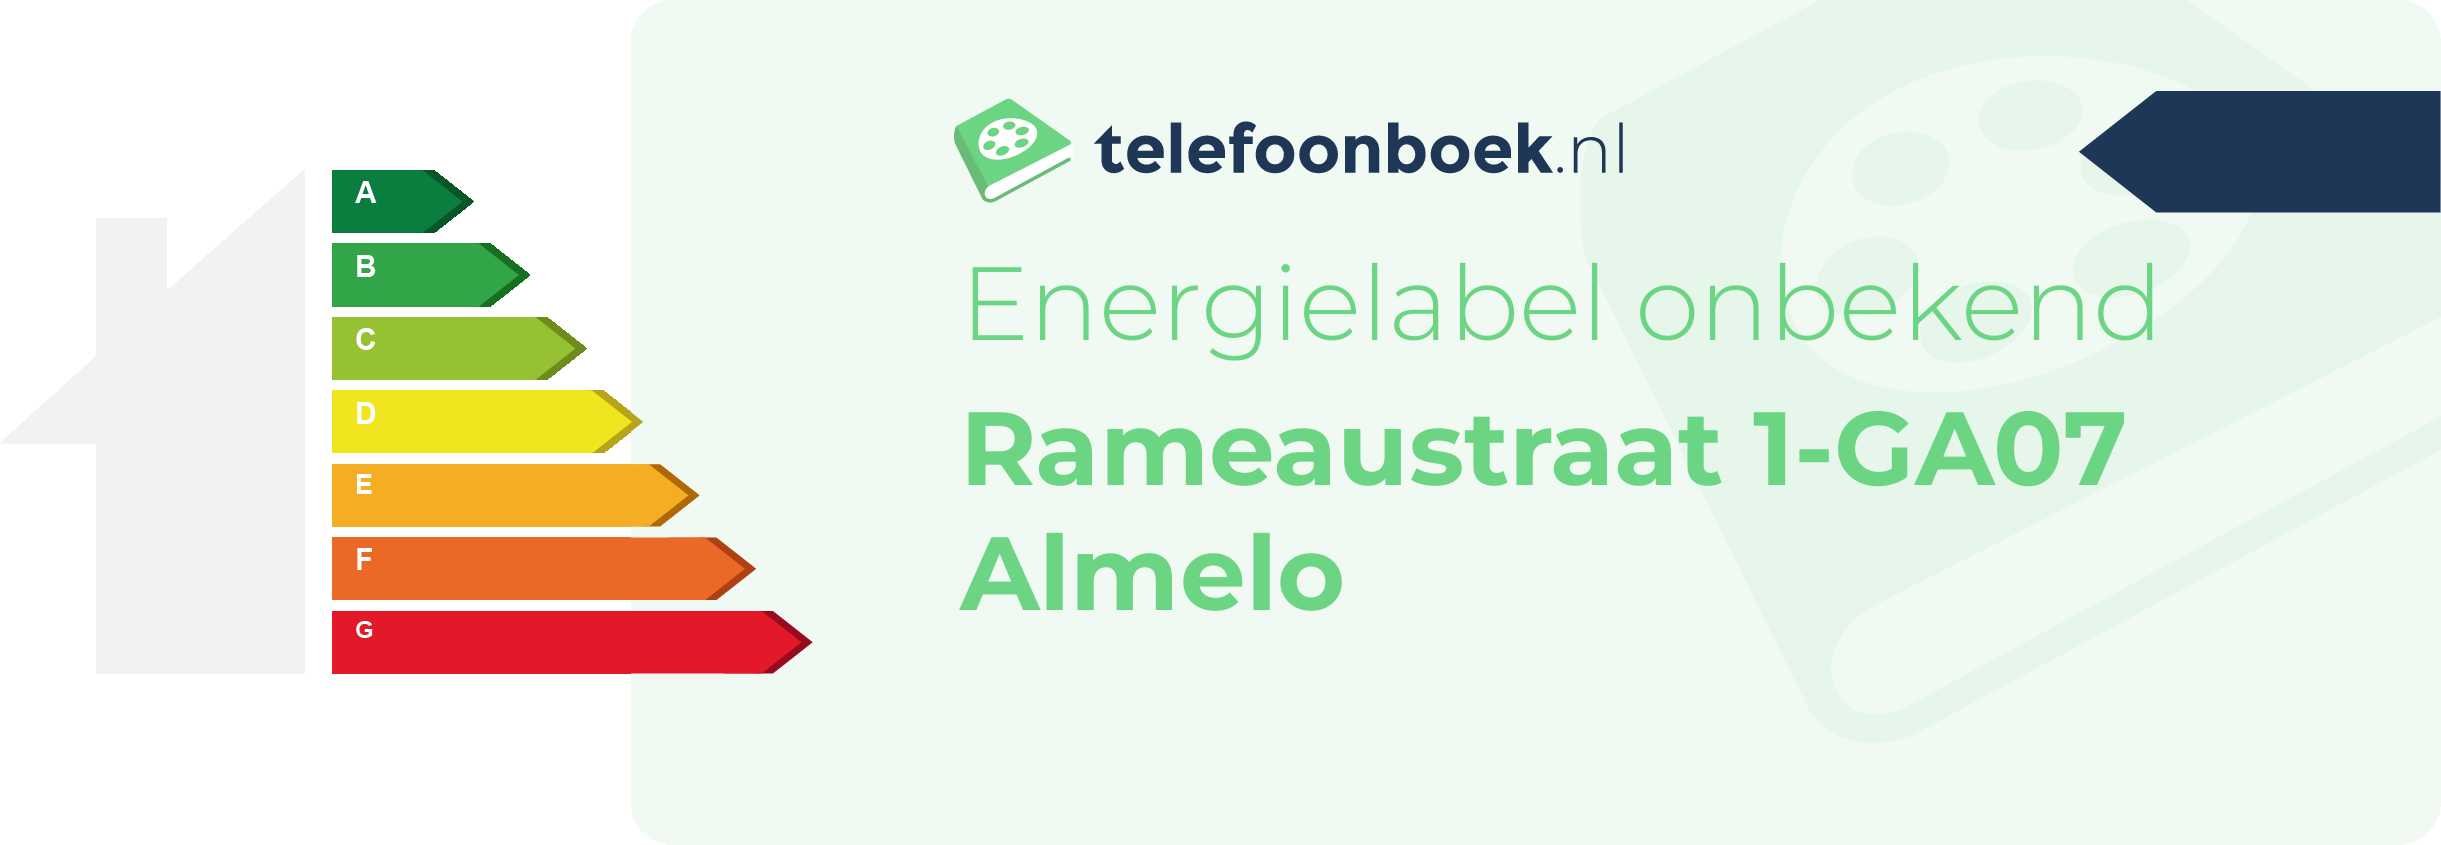 Energielabel Rameaustraat 1-GA07 Almelo